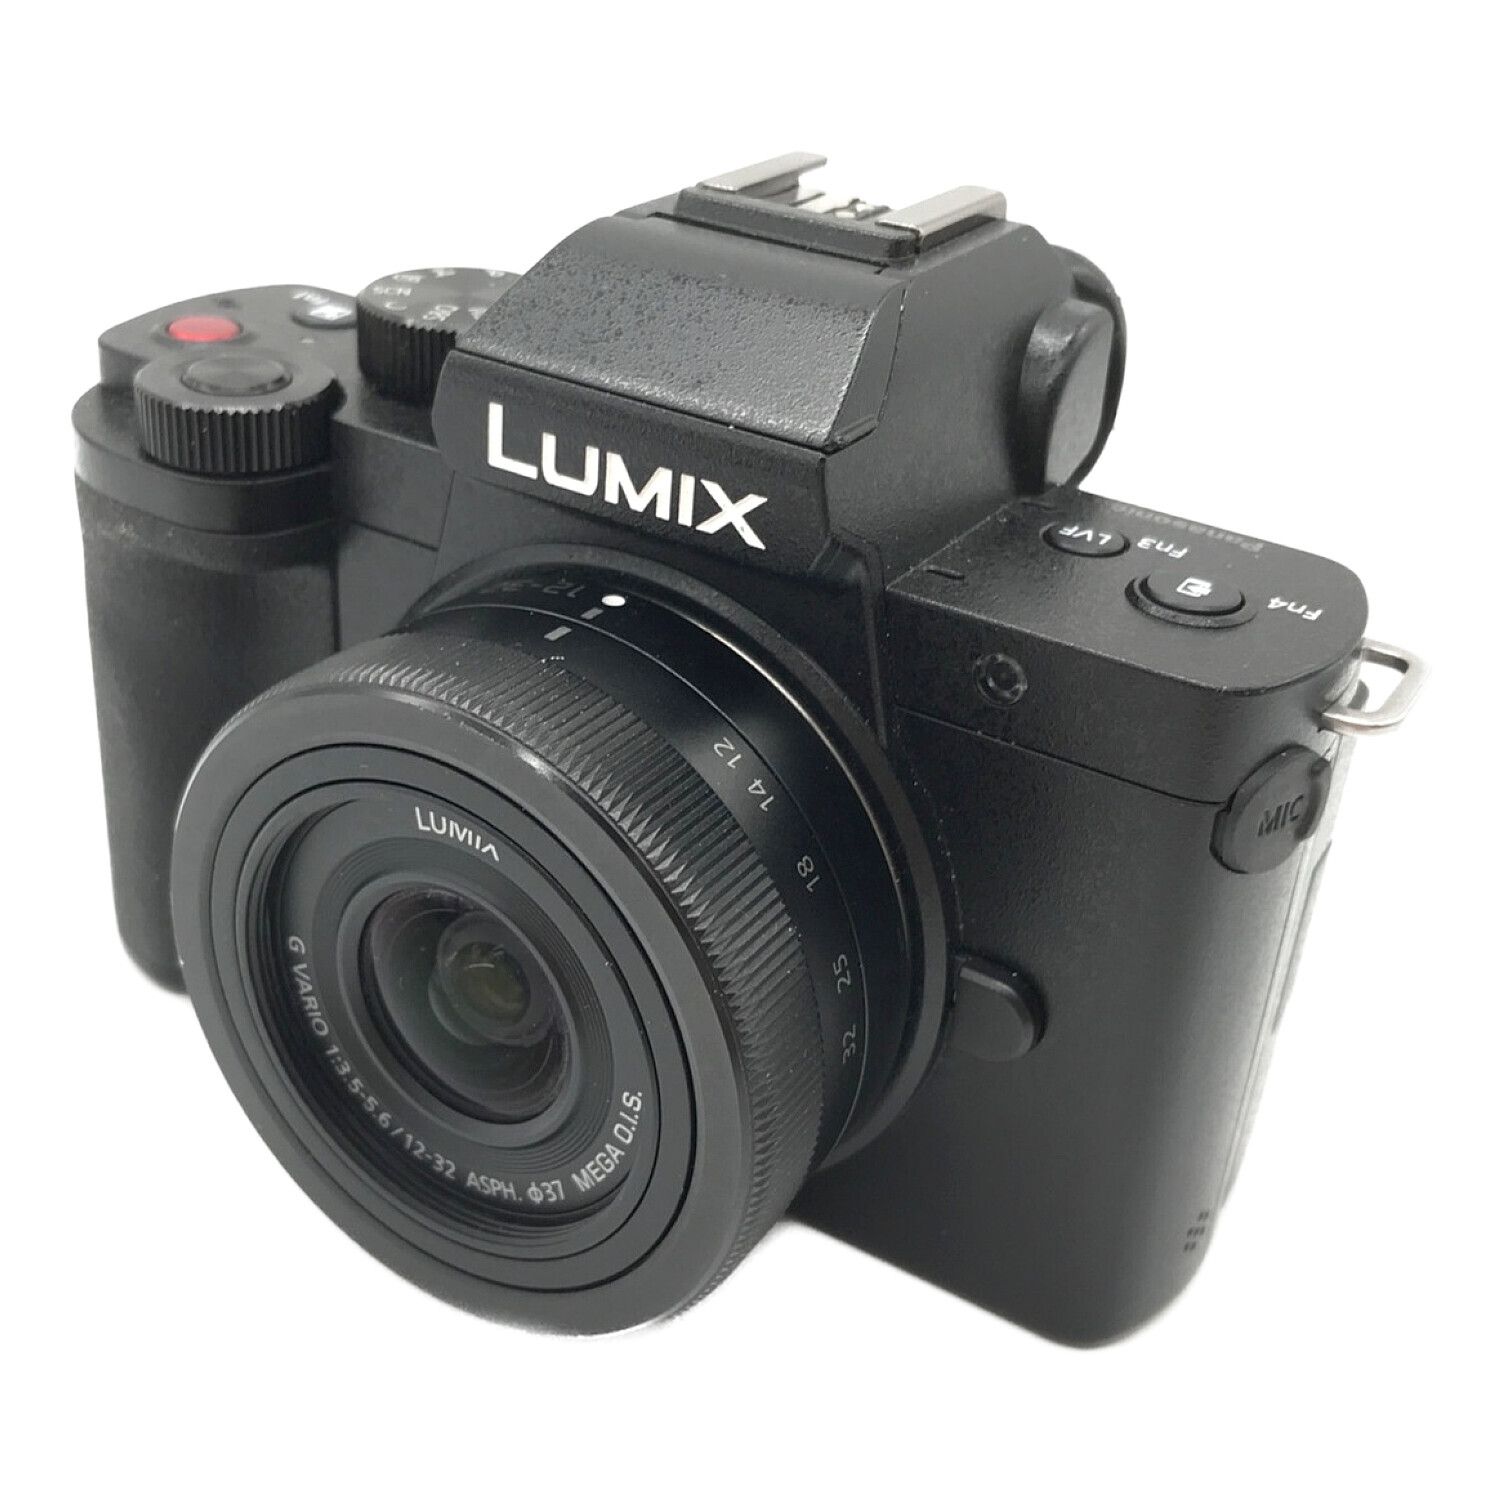 一眼カメラ DC-G100モデル名LUMIX - デジタルカメラ